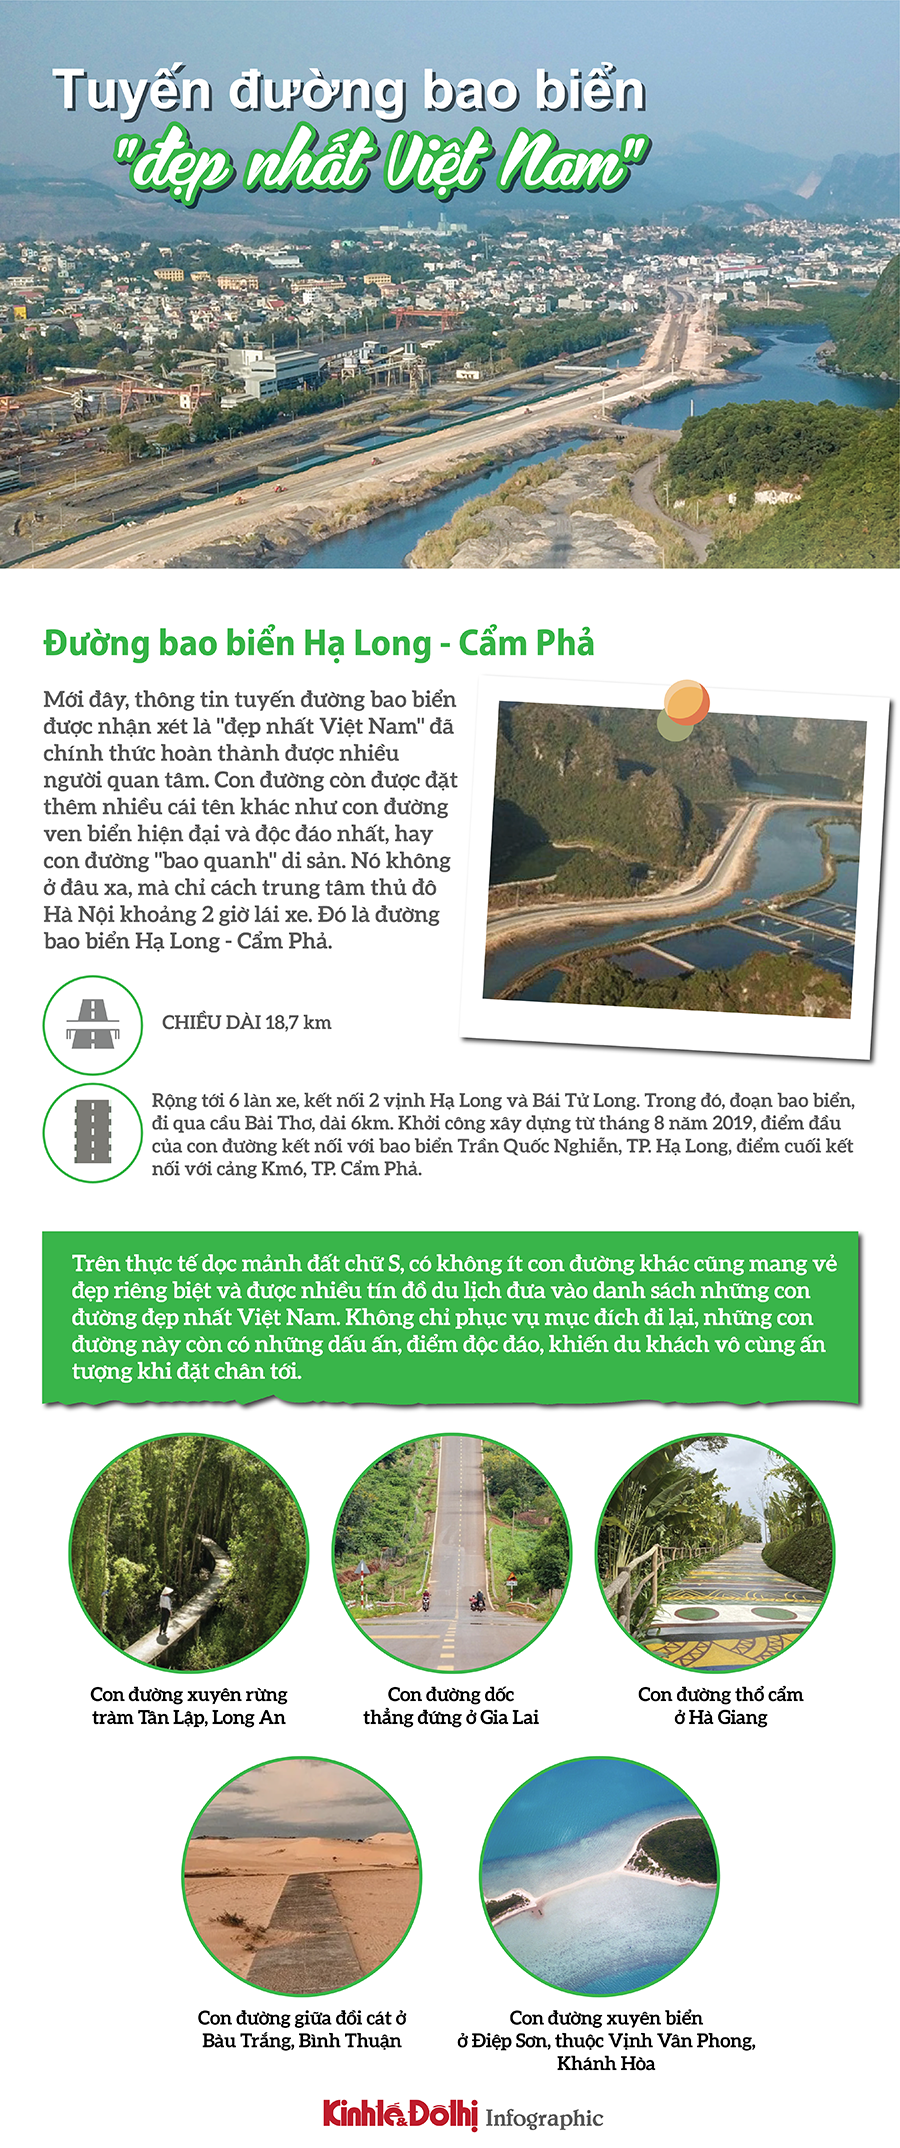 Điểm danh những tuyến đường bao biển được mệnh danh "đẹp nhất Việt Nam" - Ảnh 1